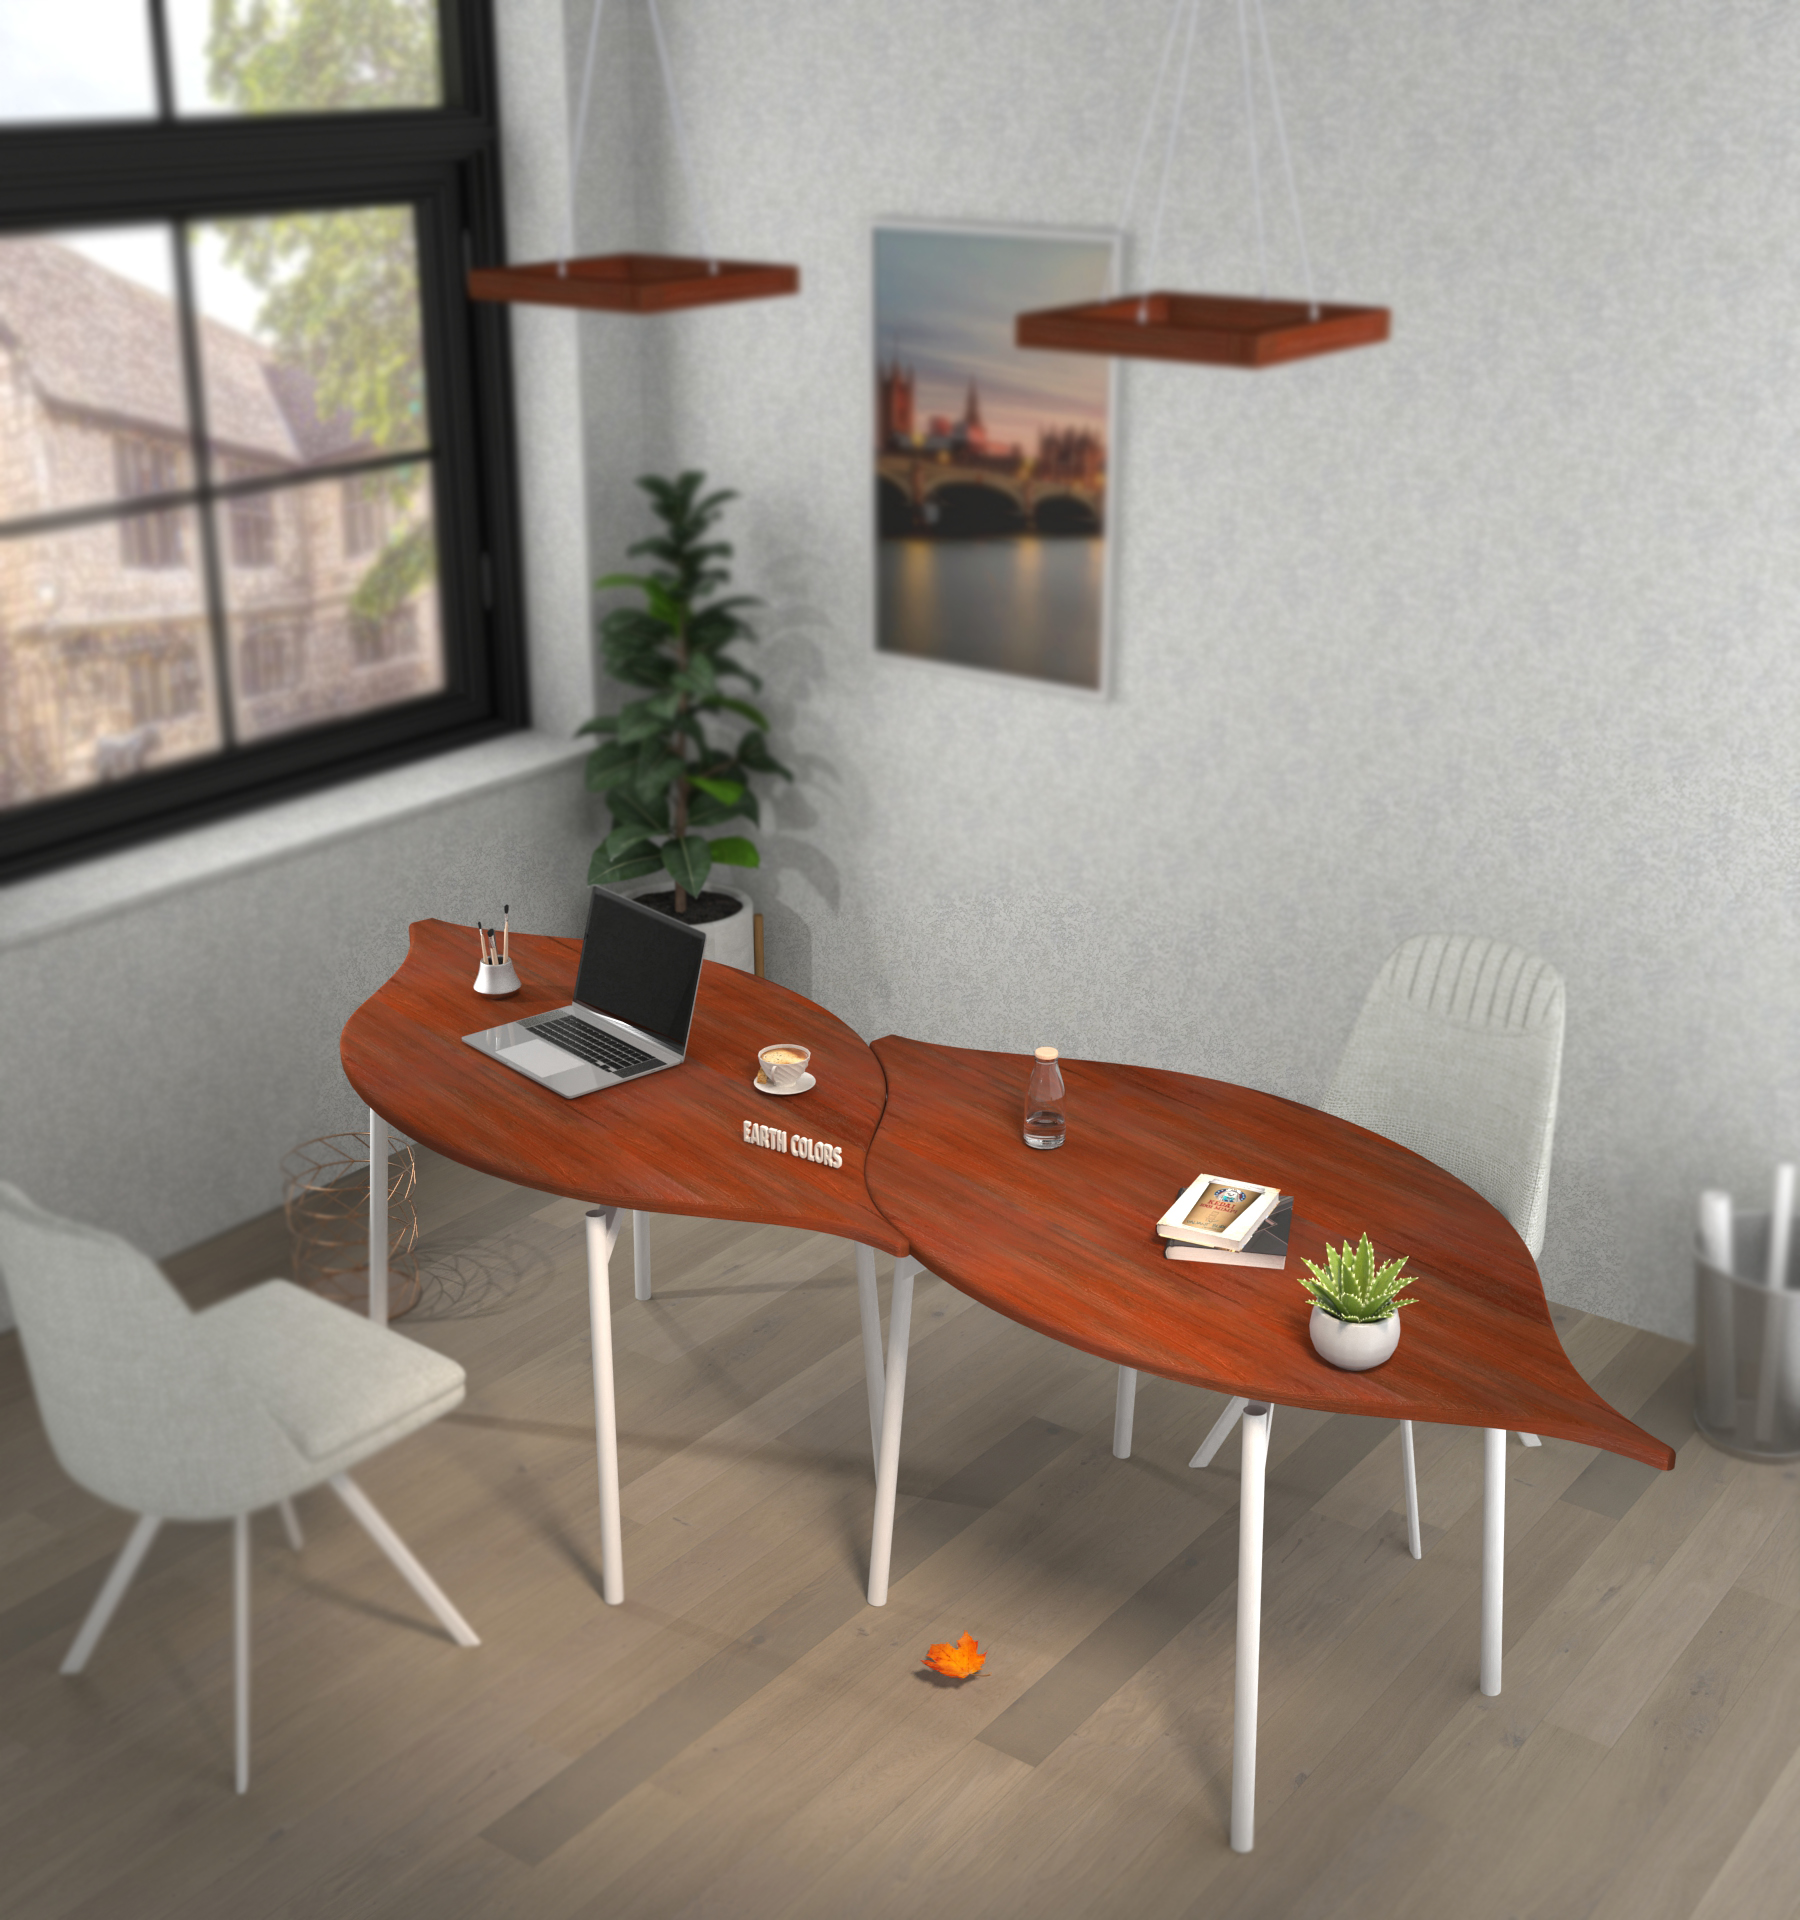 Desks for office furniture